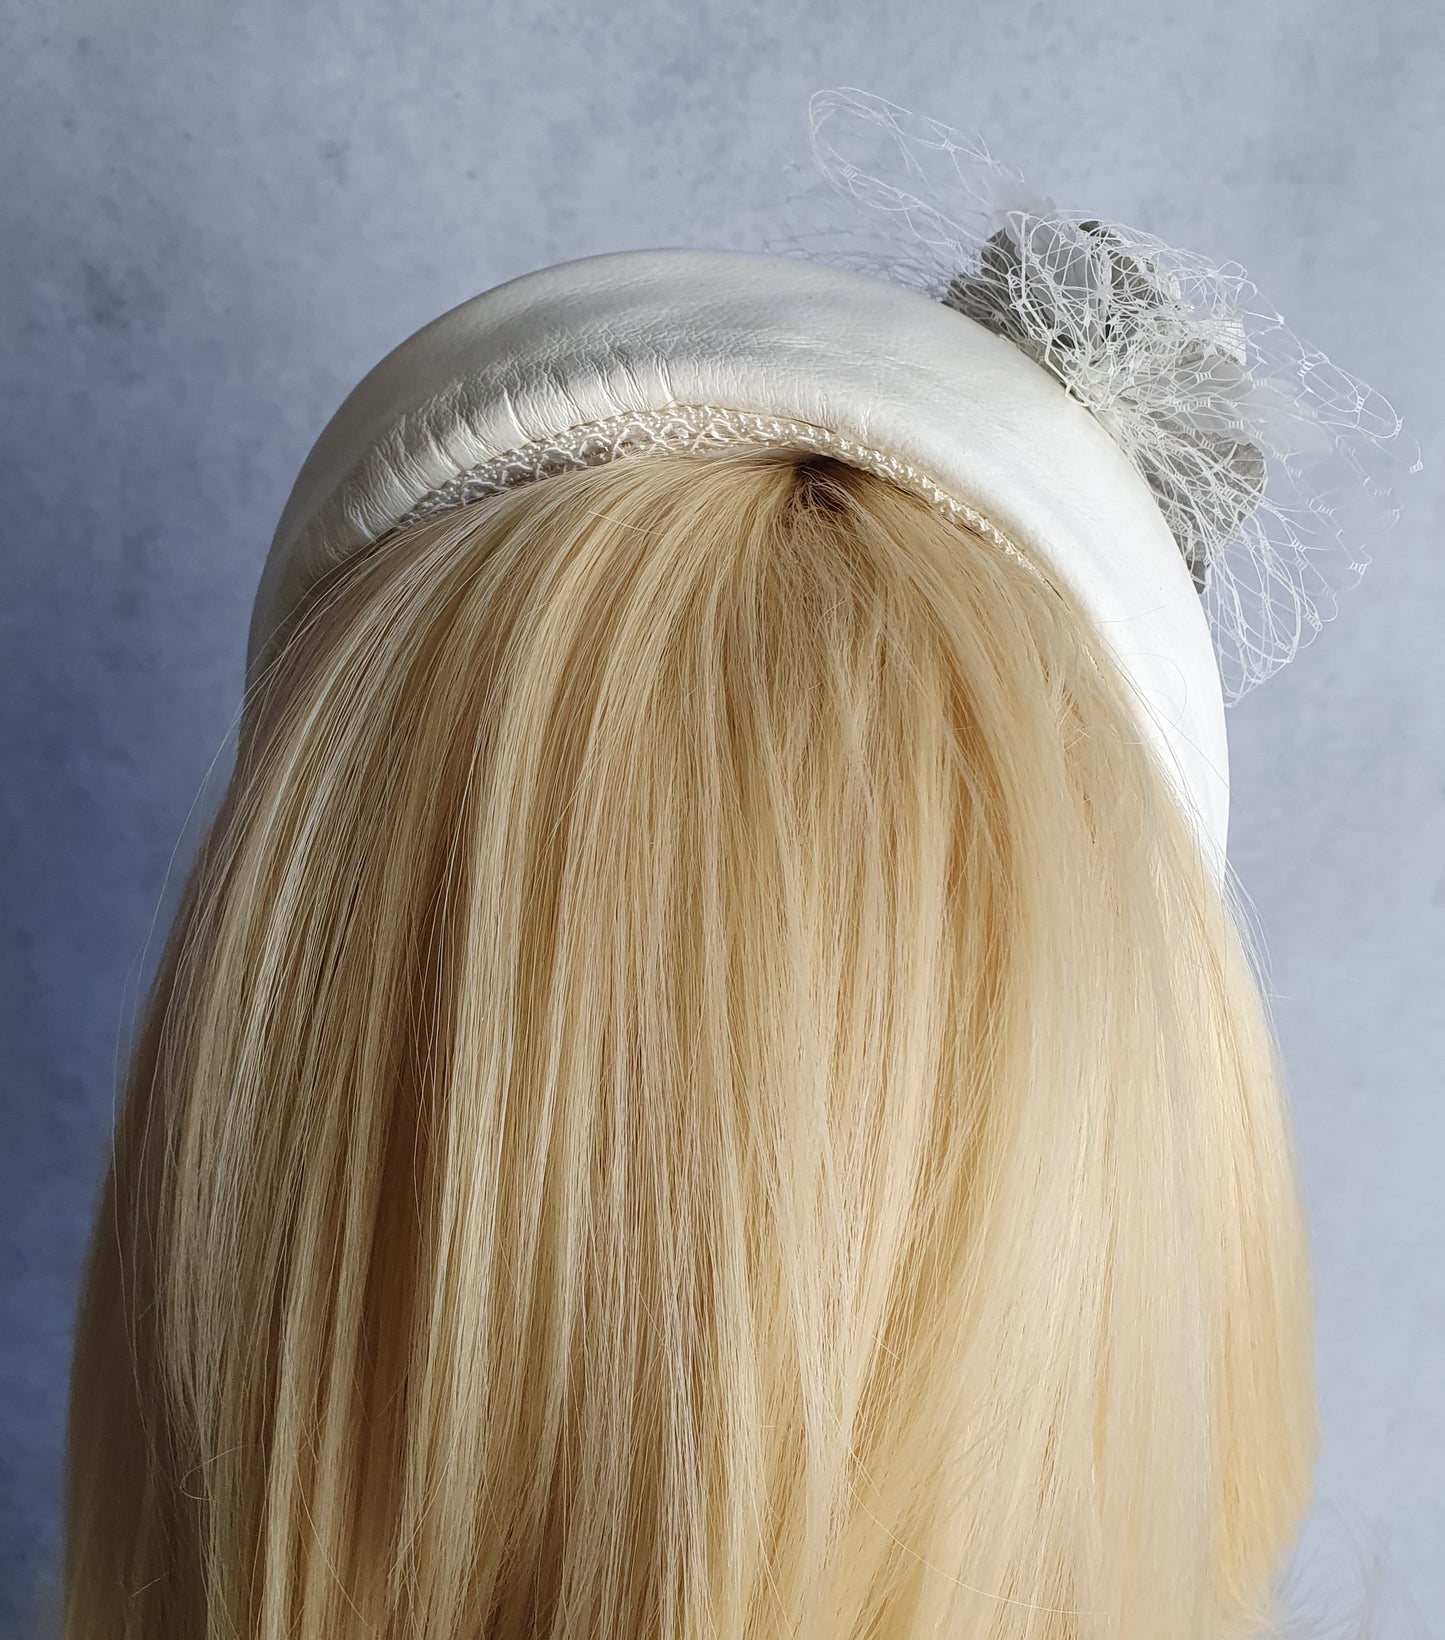 Handgemaakte witte Hoofdband van natuurlijk leder- voor een speciale gelegenheid. Fascinator, Tiara, Haarband, Hoofdband